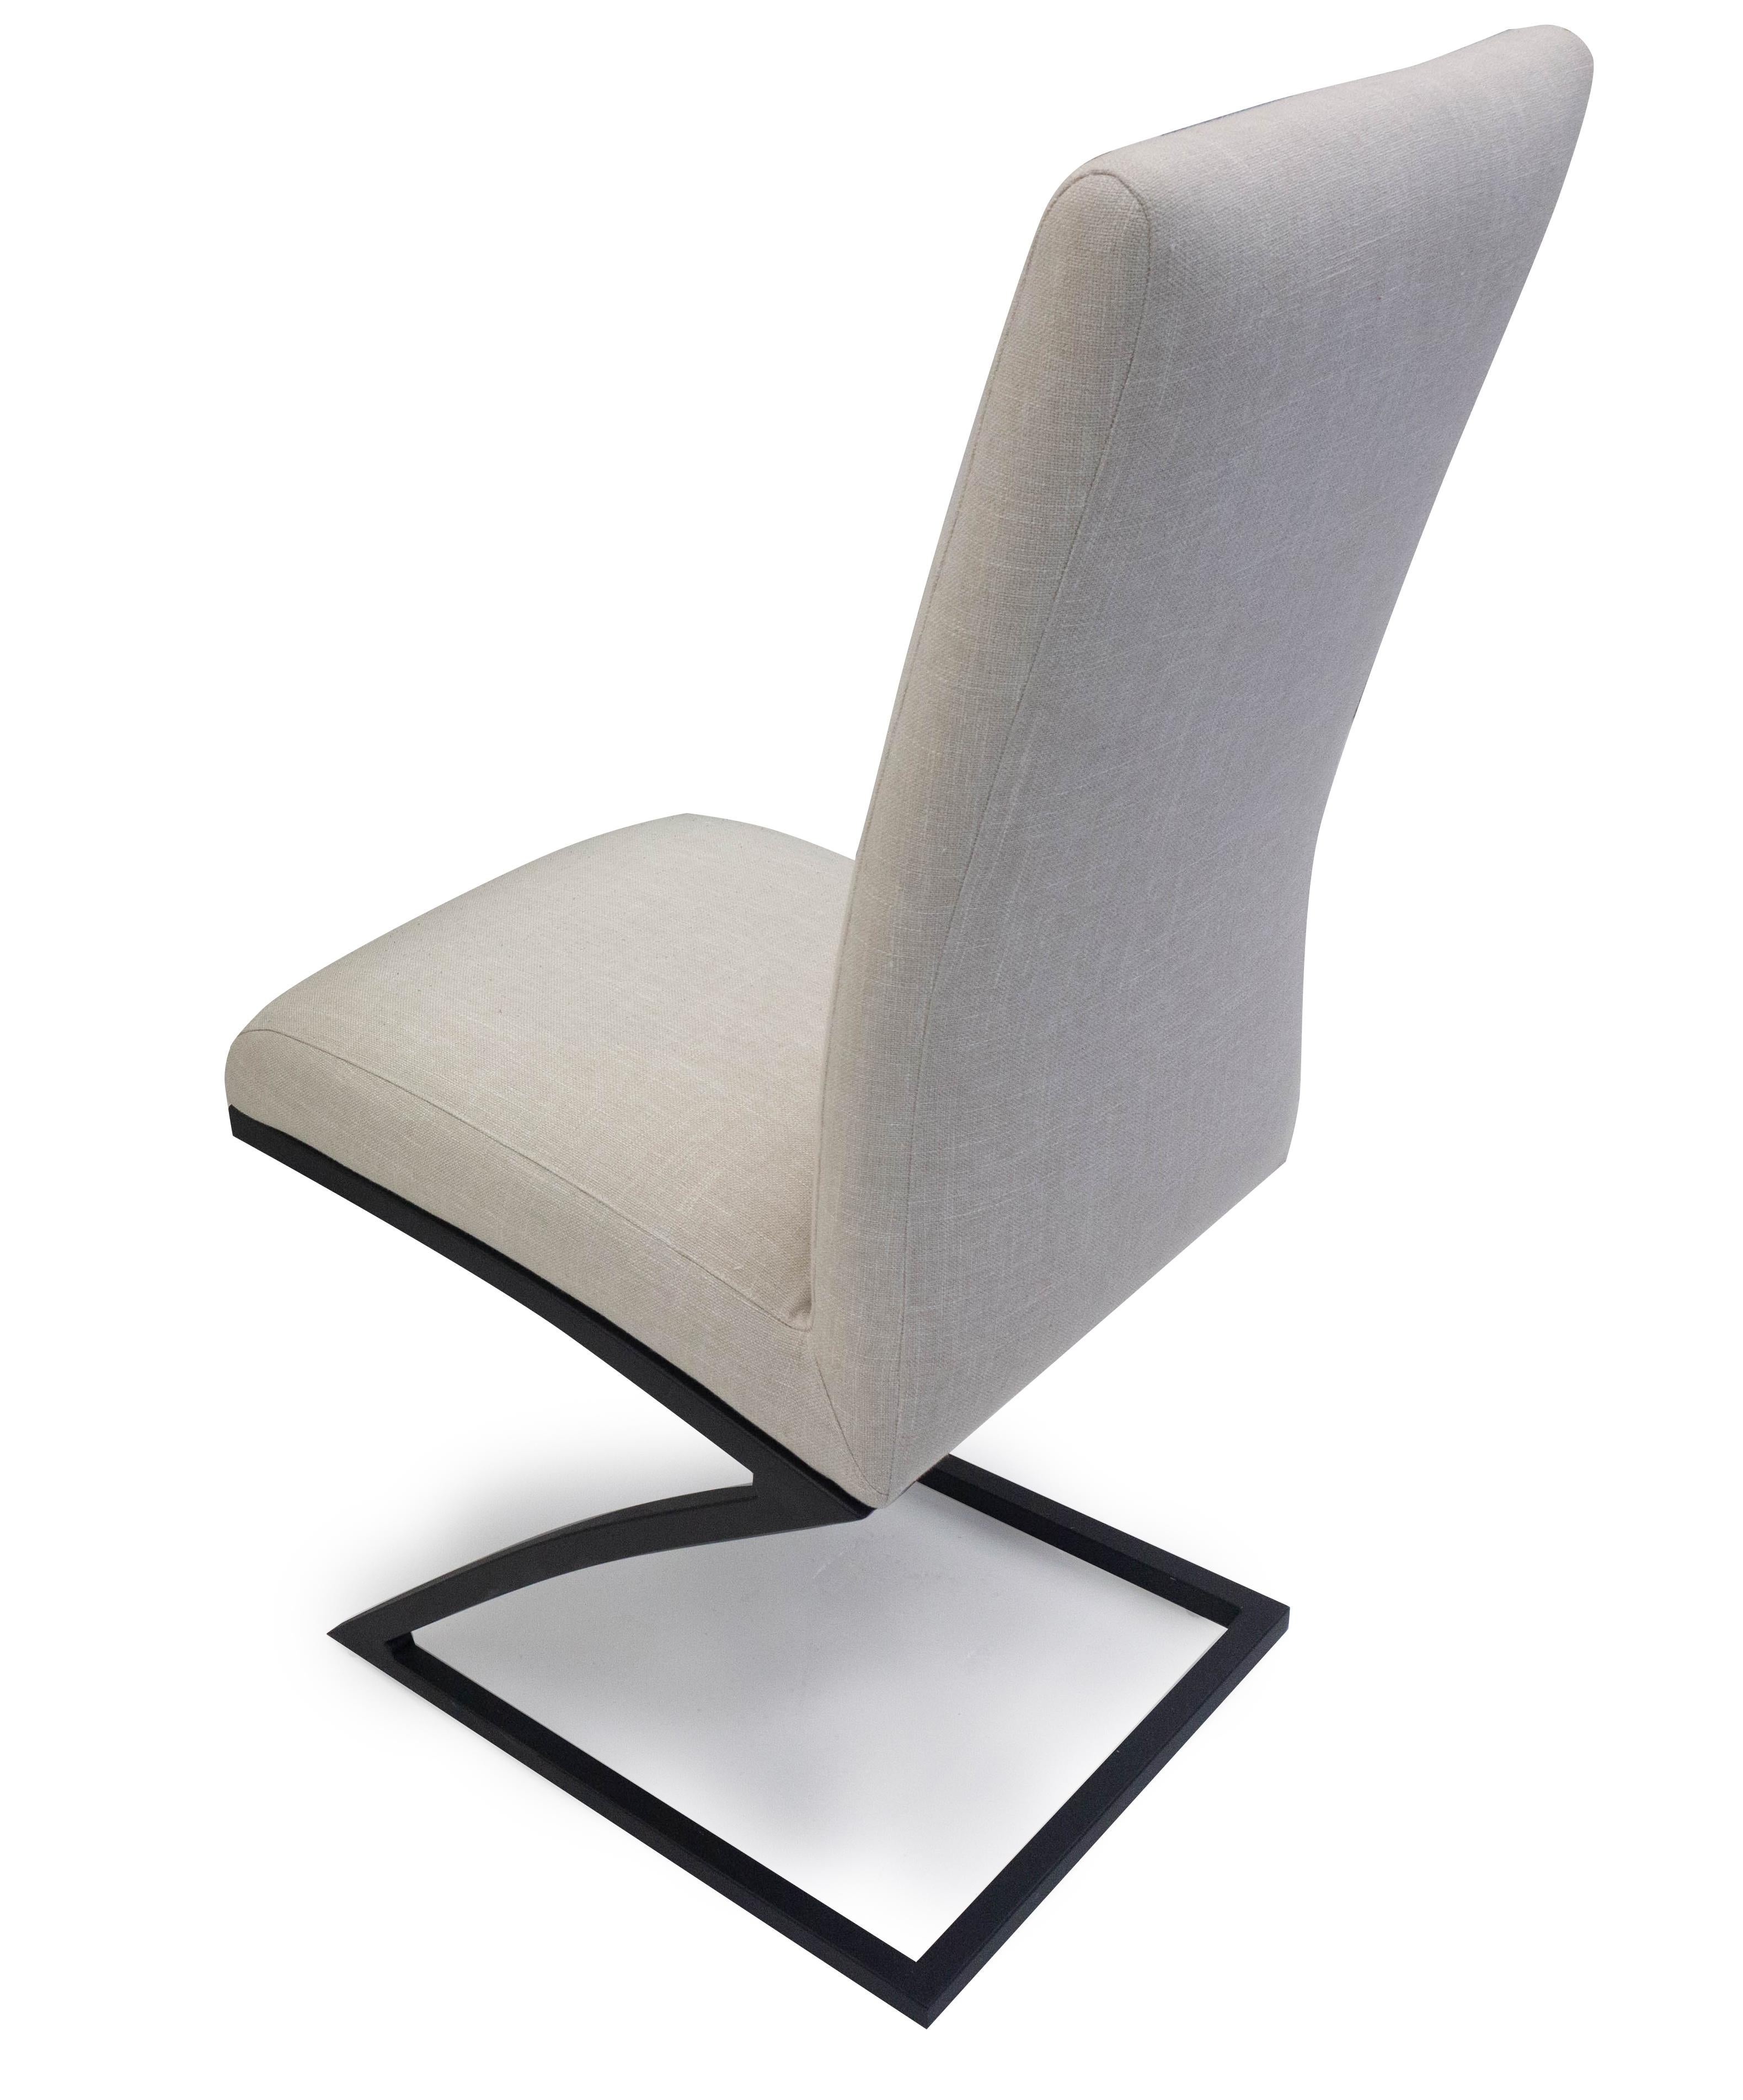 Unser Svelte Stuhl ist ein komfortabler Esszimmerstuhl mit einer etwas schmalen Form und einem schmalen Fuß. Abgebildet in beigem Leinen, der Stoff des Stuhls ist individuell anpassbar.

Abmessungen:
17